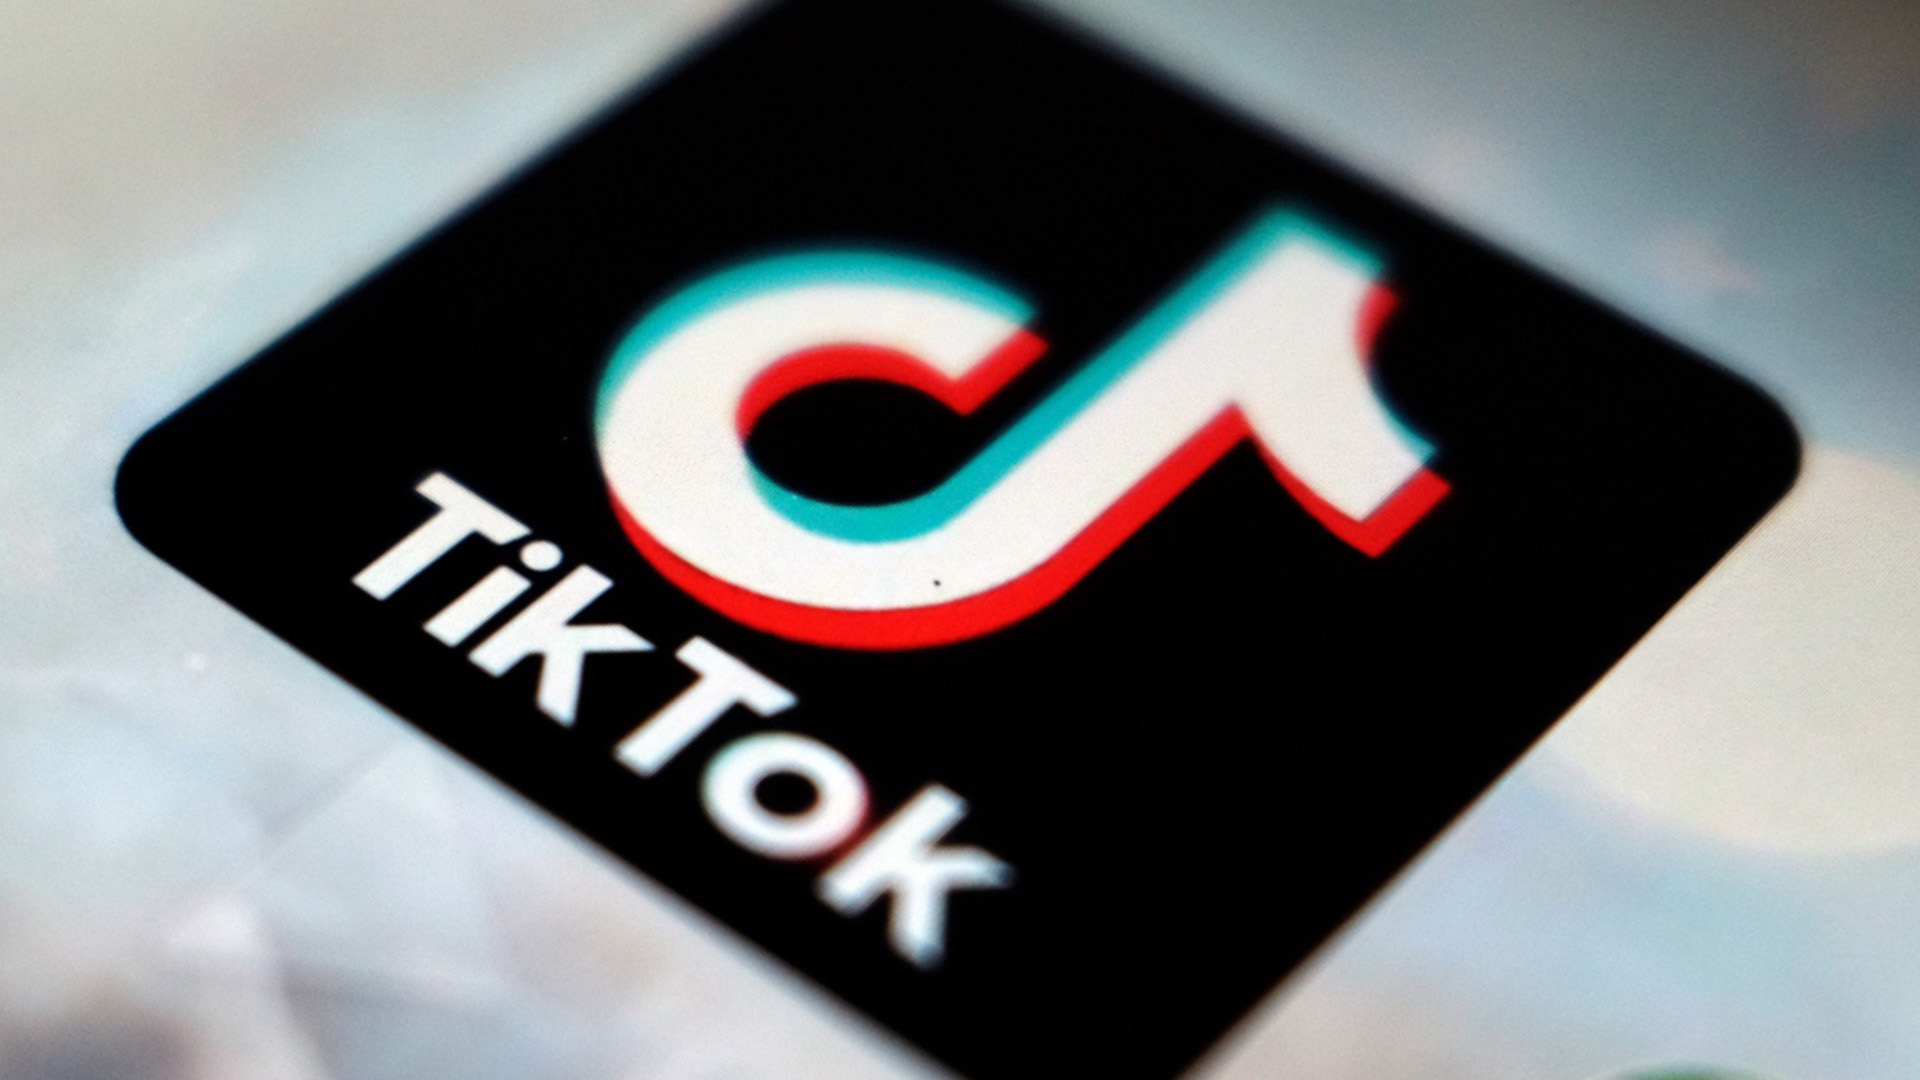 Dans le but d’avoir une ligne directrice plus sûre, TikTok LIVE augmentera la limite d’âge pour les utilisateurs et leur donnera la possibilité de diffuser des vidéos en direct réservées aux adultes.